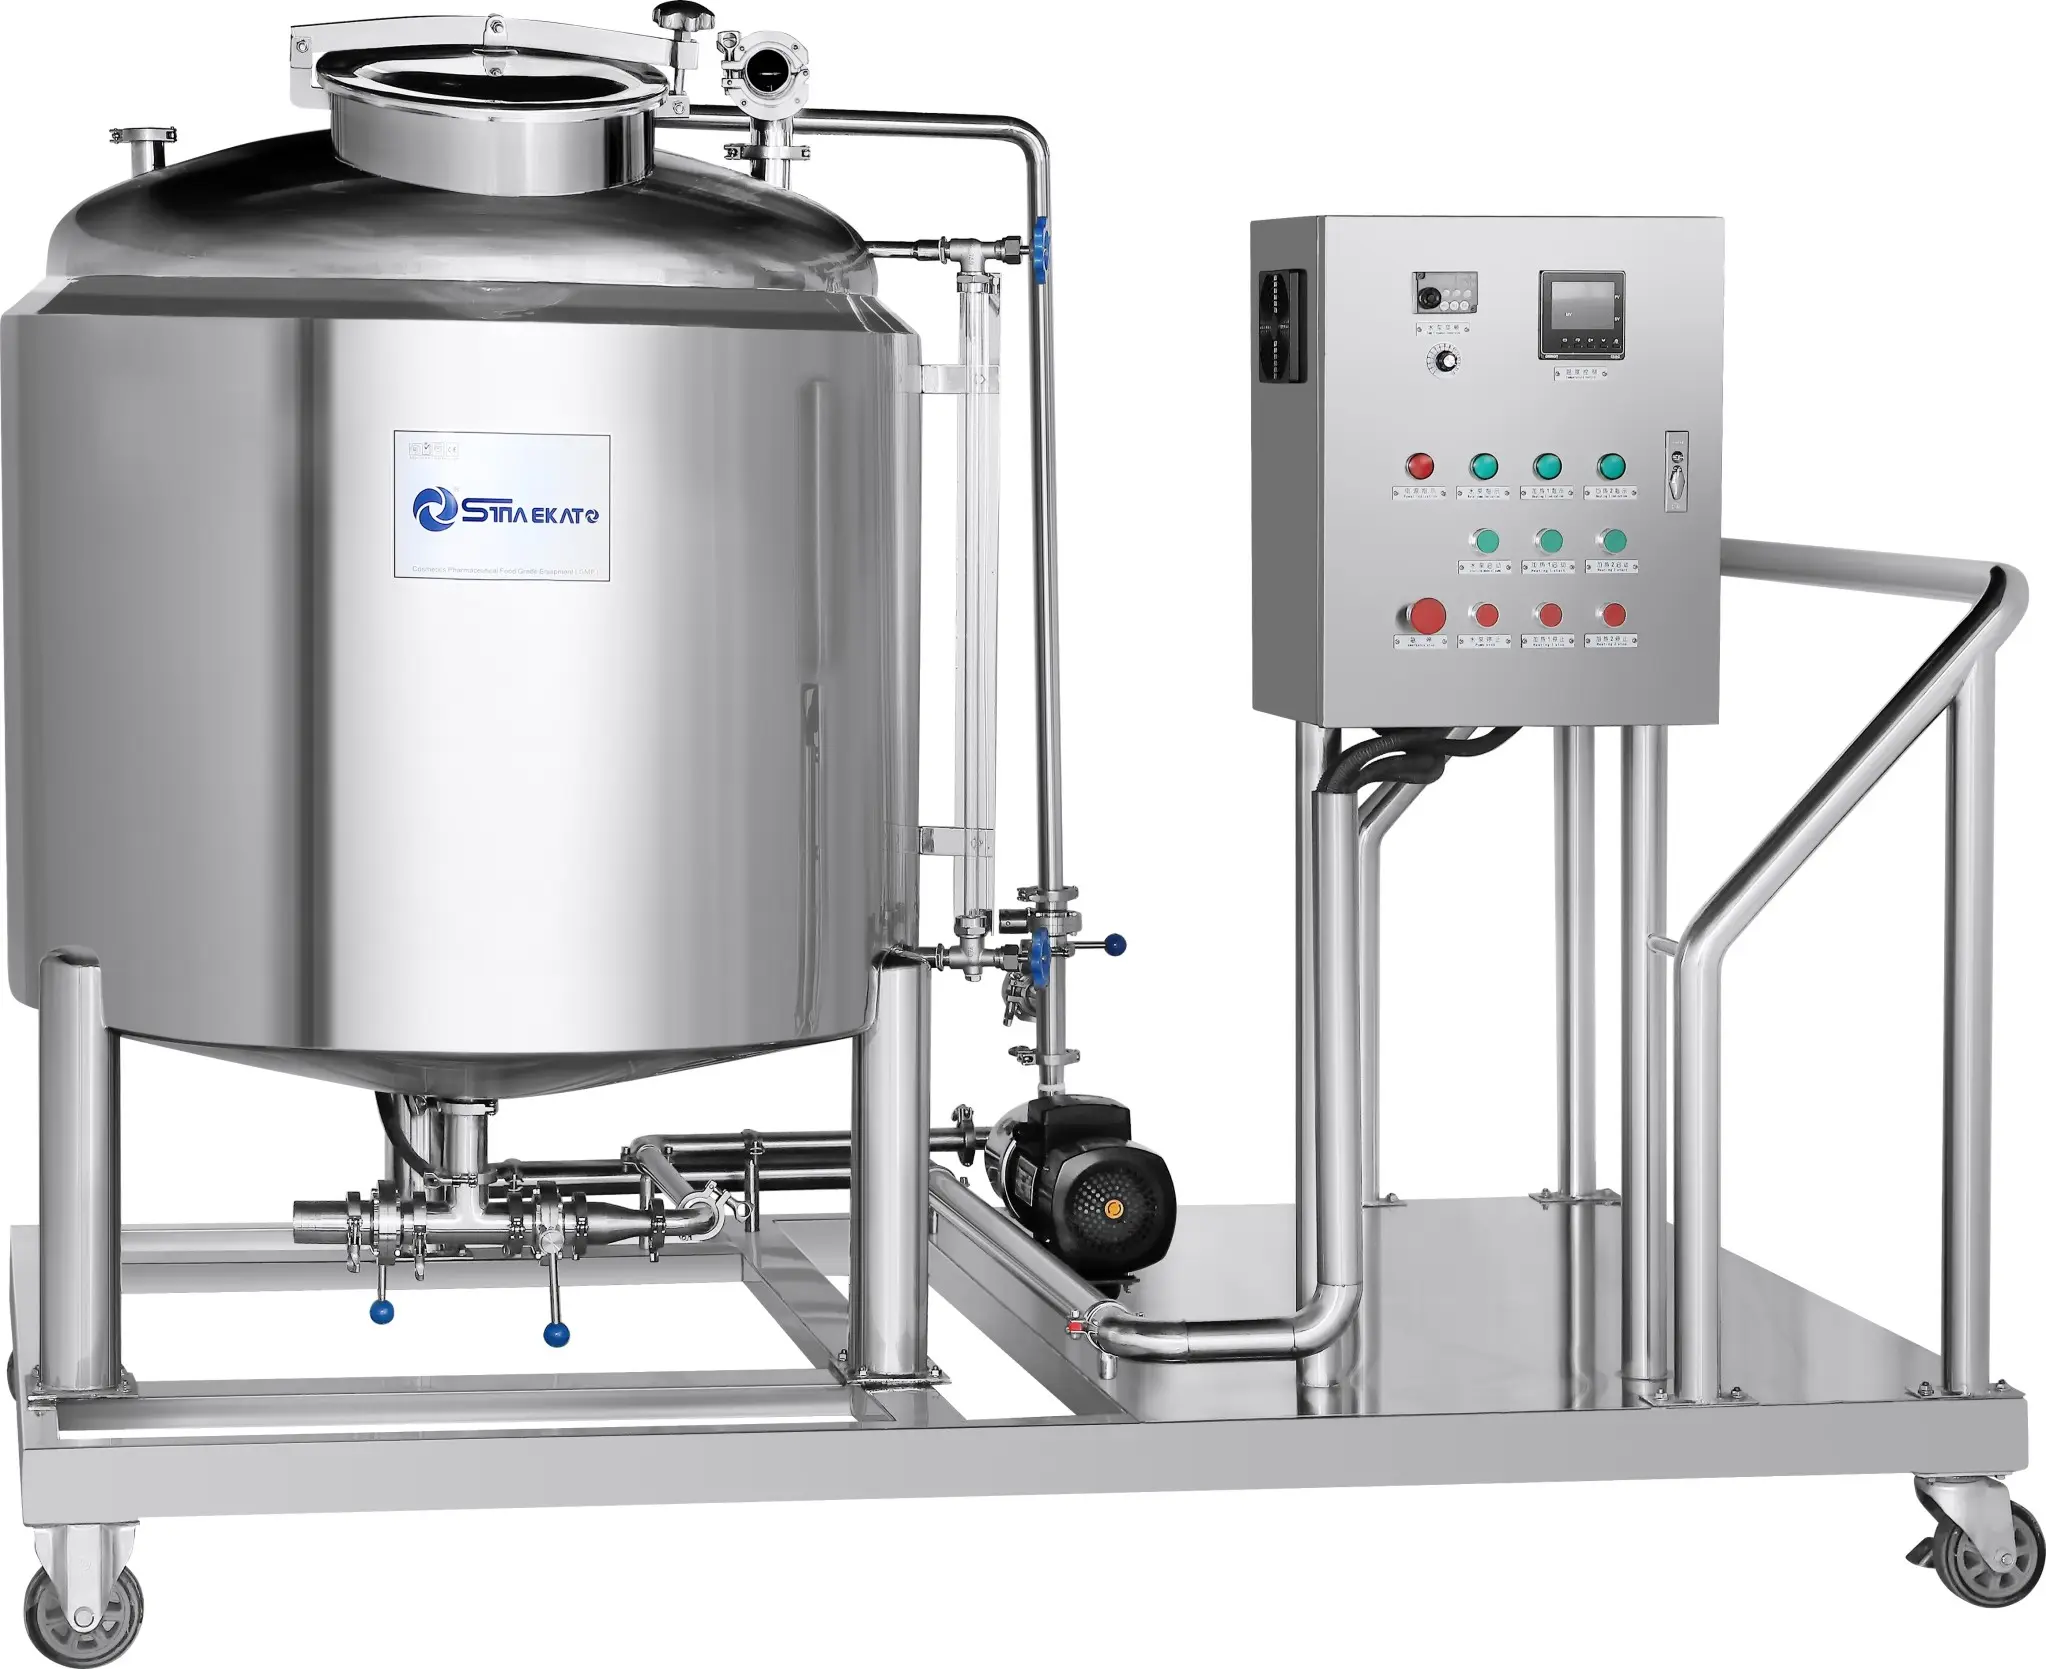 Sıcak satış yüksek kalite ucuz CIP mobil temizleme sistemi tek tankı temizleme su arıtma ekipmanları ünitesi makinesi için kozmetik